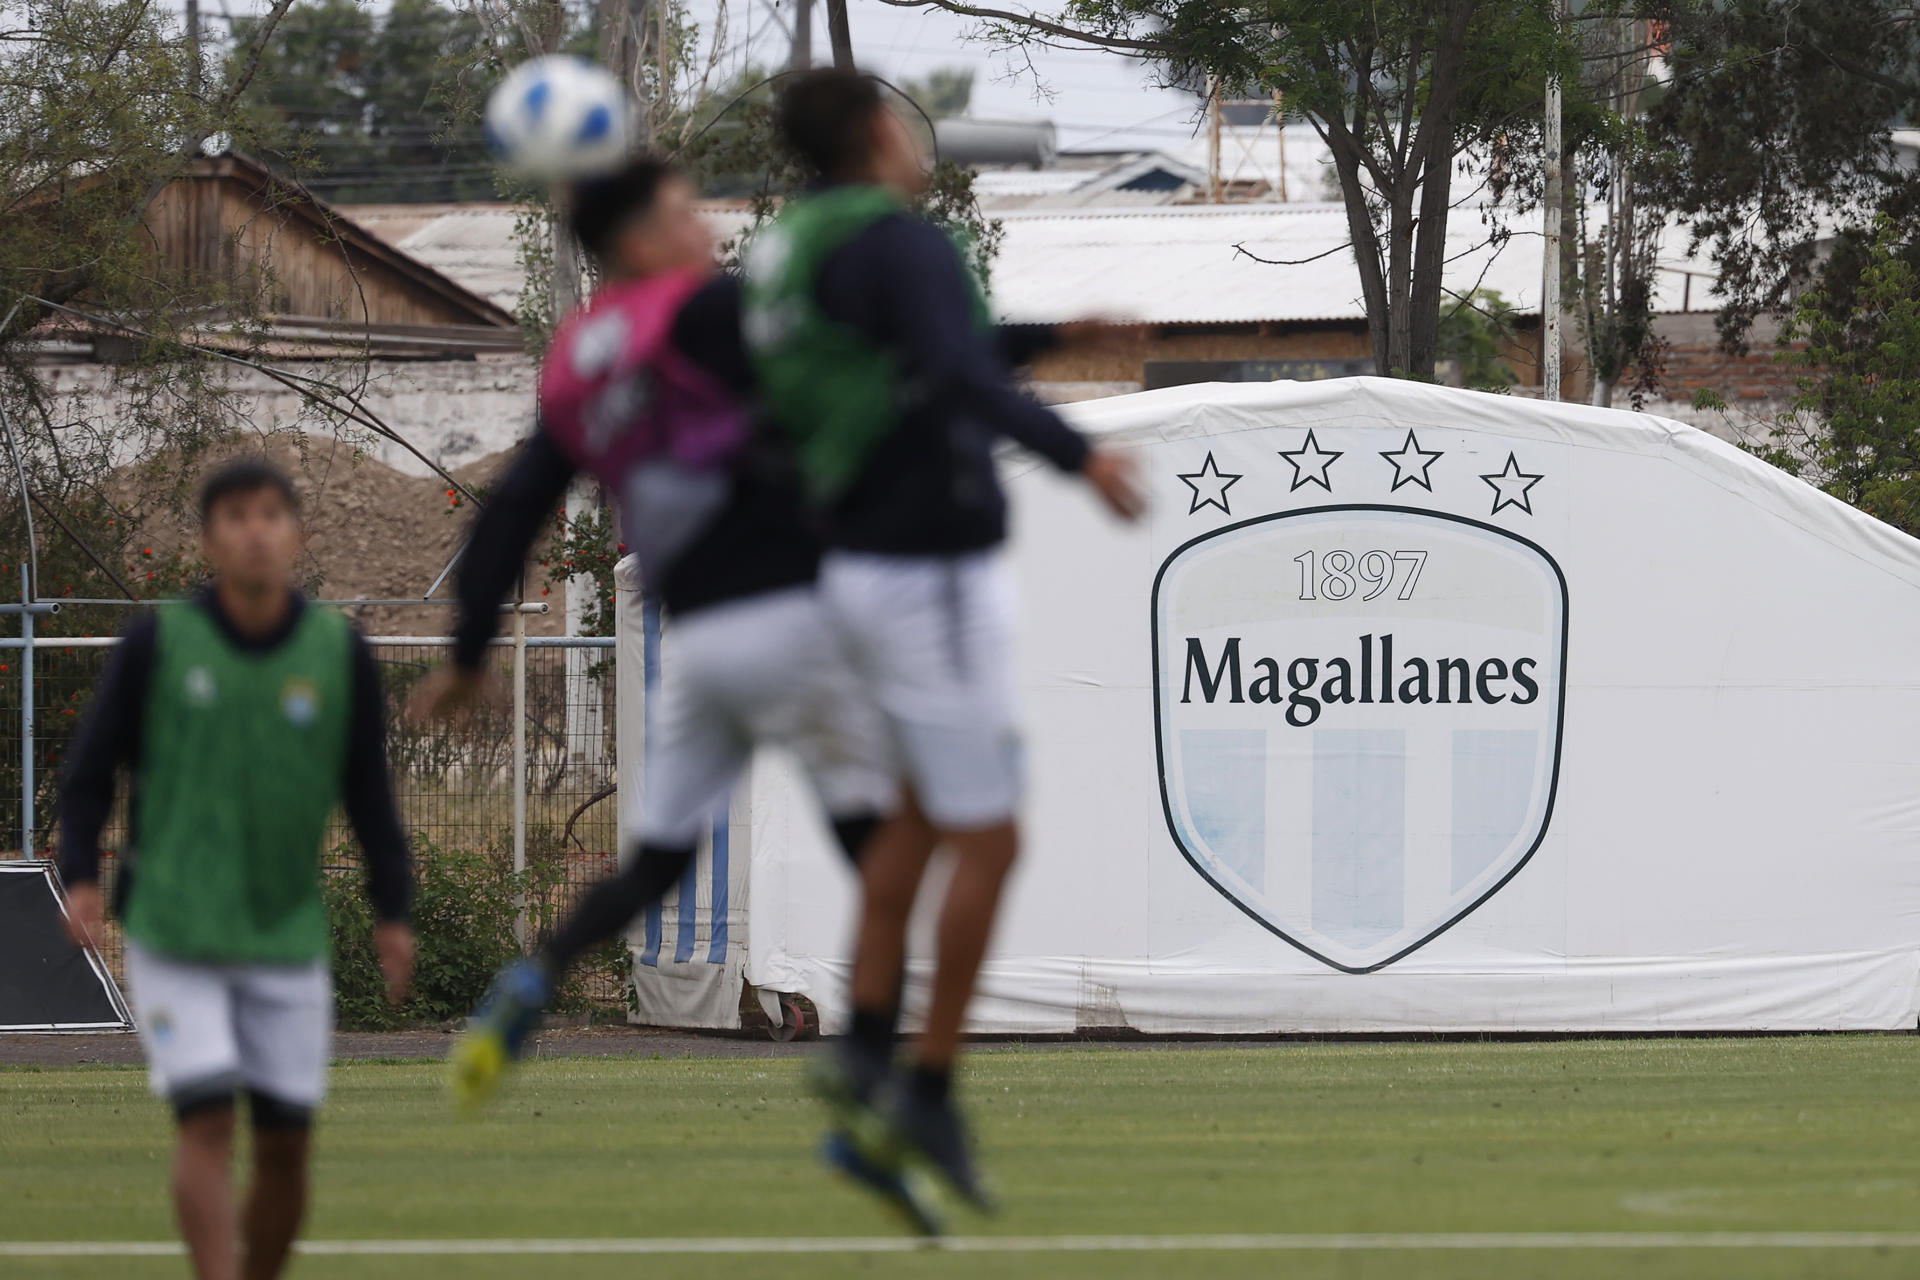 Jugadores del club Magallanes, durante un entrenamiento. Fundado en 1897, CD Magallanes es uno de los equipos históricos de Chile y de Sudamérica. EFE/ Elvis González